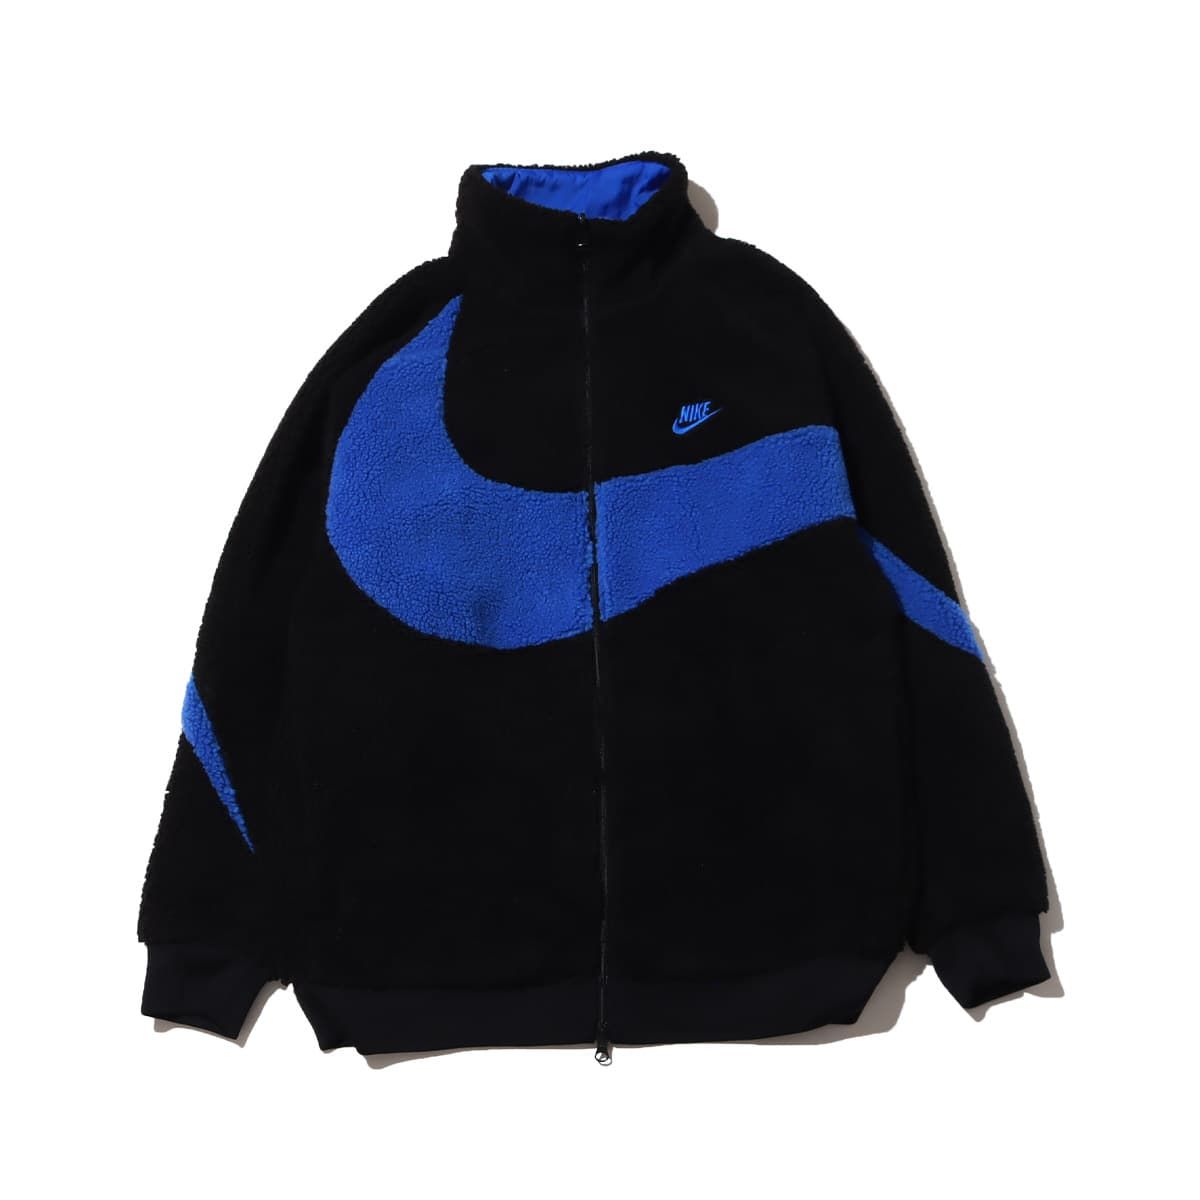 Nike's "Big Swoosh" Reversible Fleece Goes Big on Branding